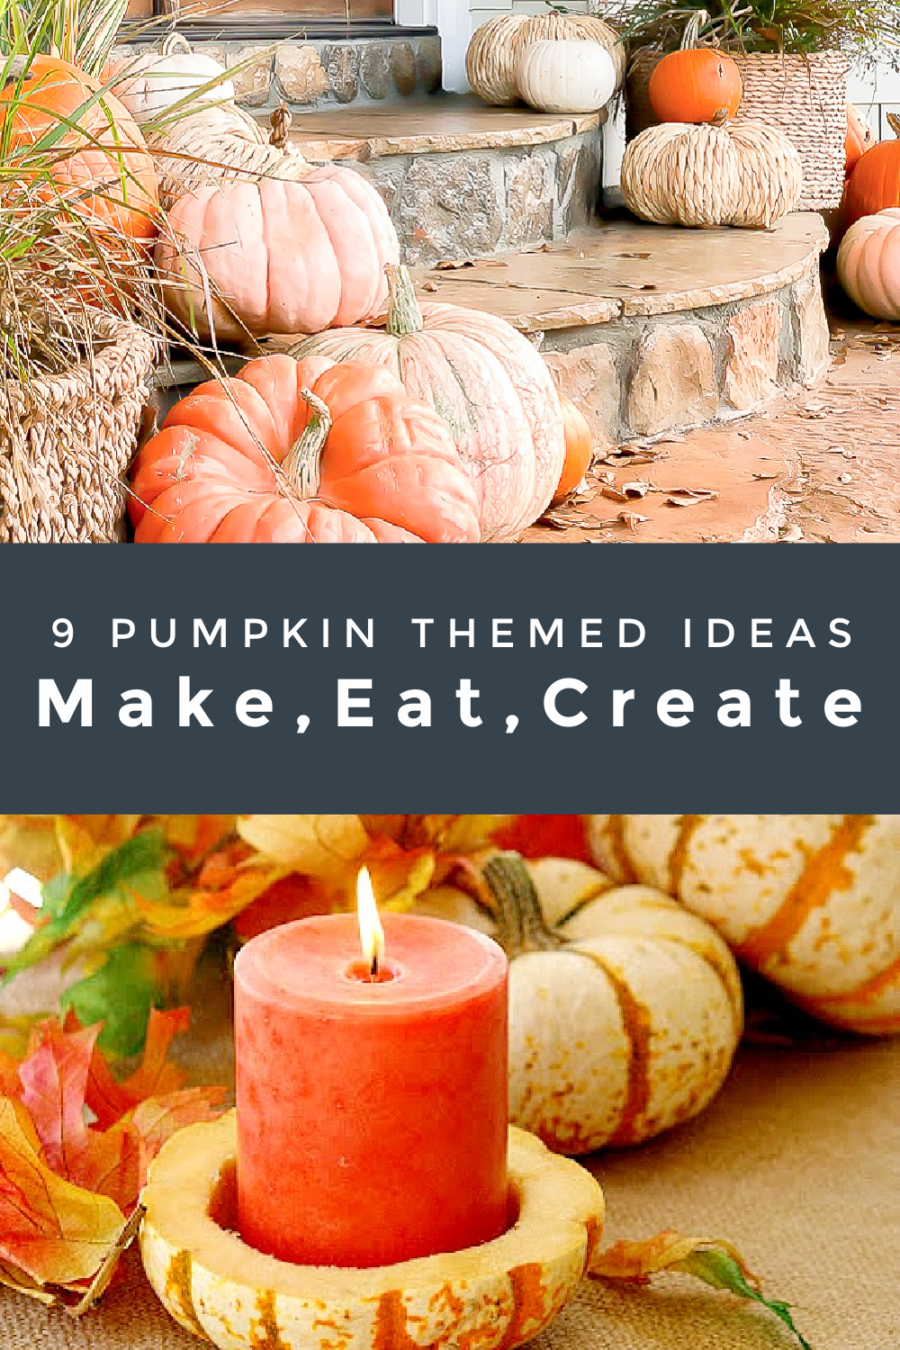 9 Pumpkin Themed Ideas